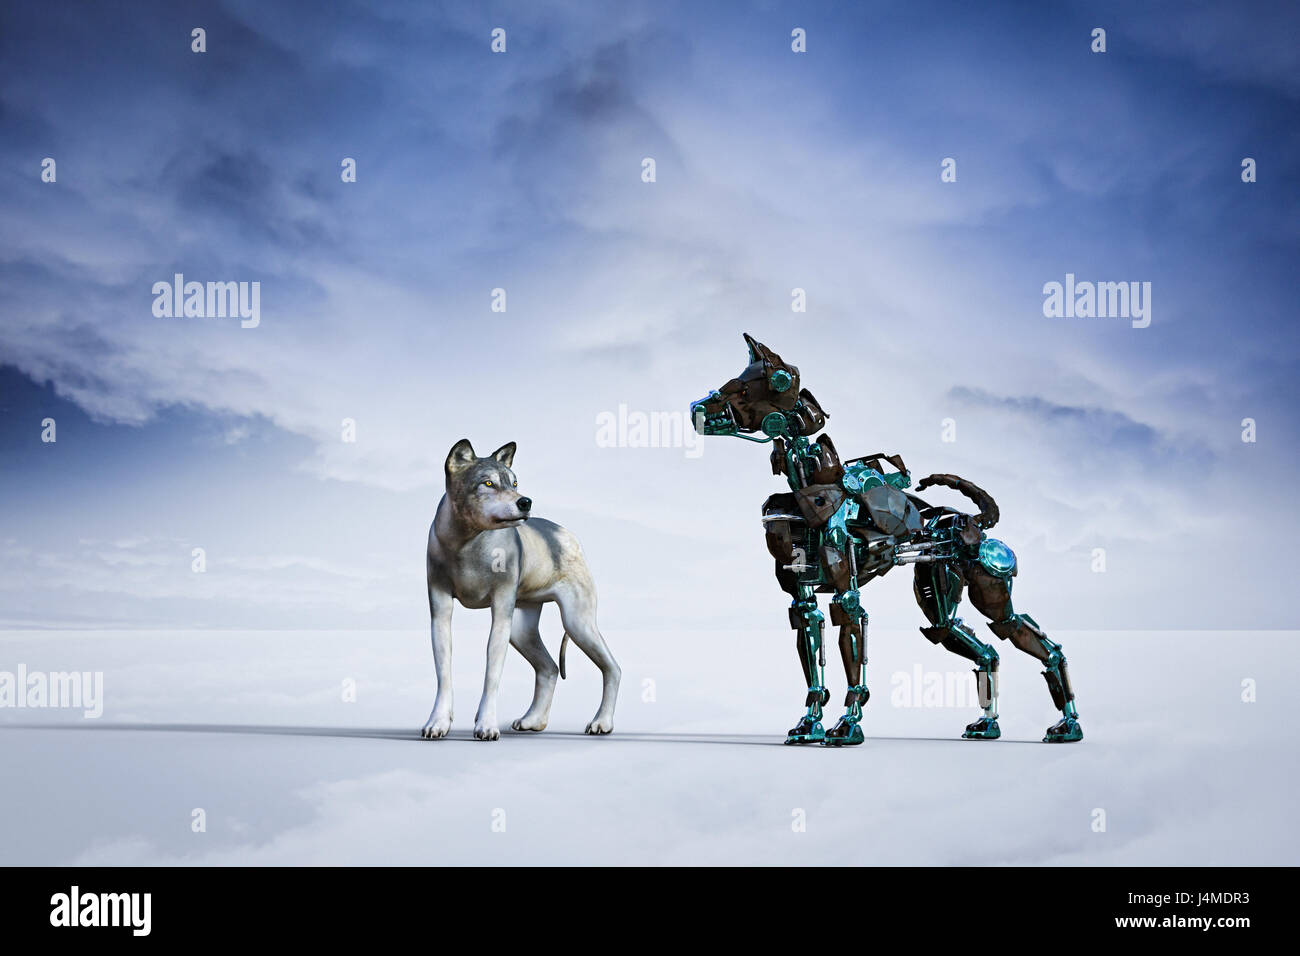 Robot dog immagini e fotografie stock ad alta risoluzione - Alamy